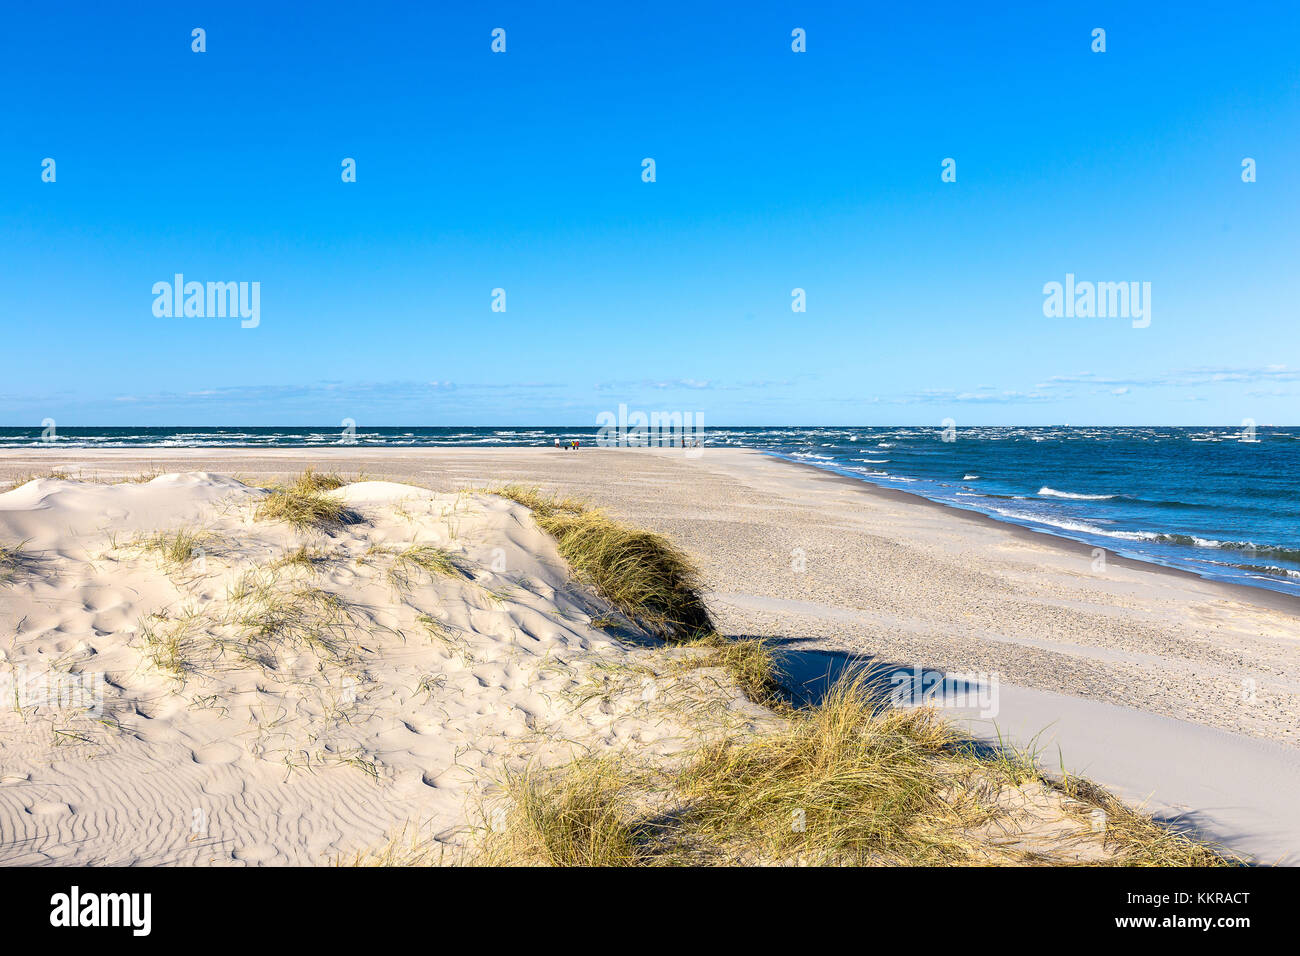 La costa di Skagen, il punto più settentrionale della Danimarca. Il punto in cui il mare del Nord e il mar baltico si uniscono. Foto Stock